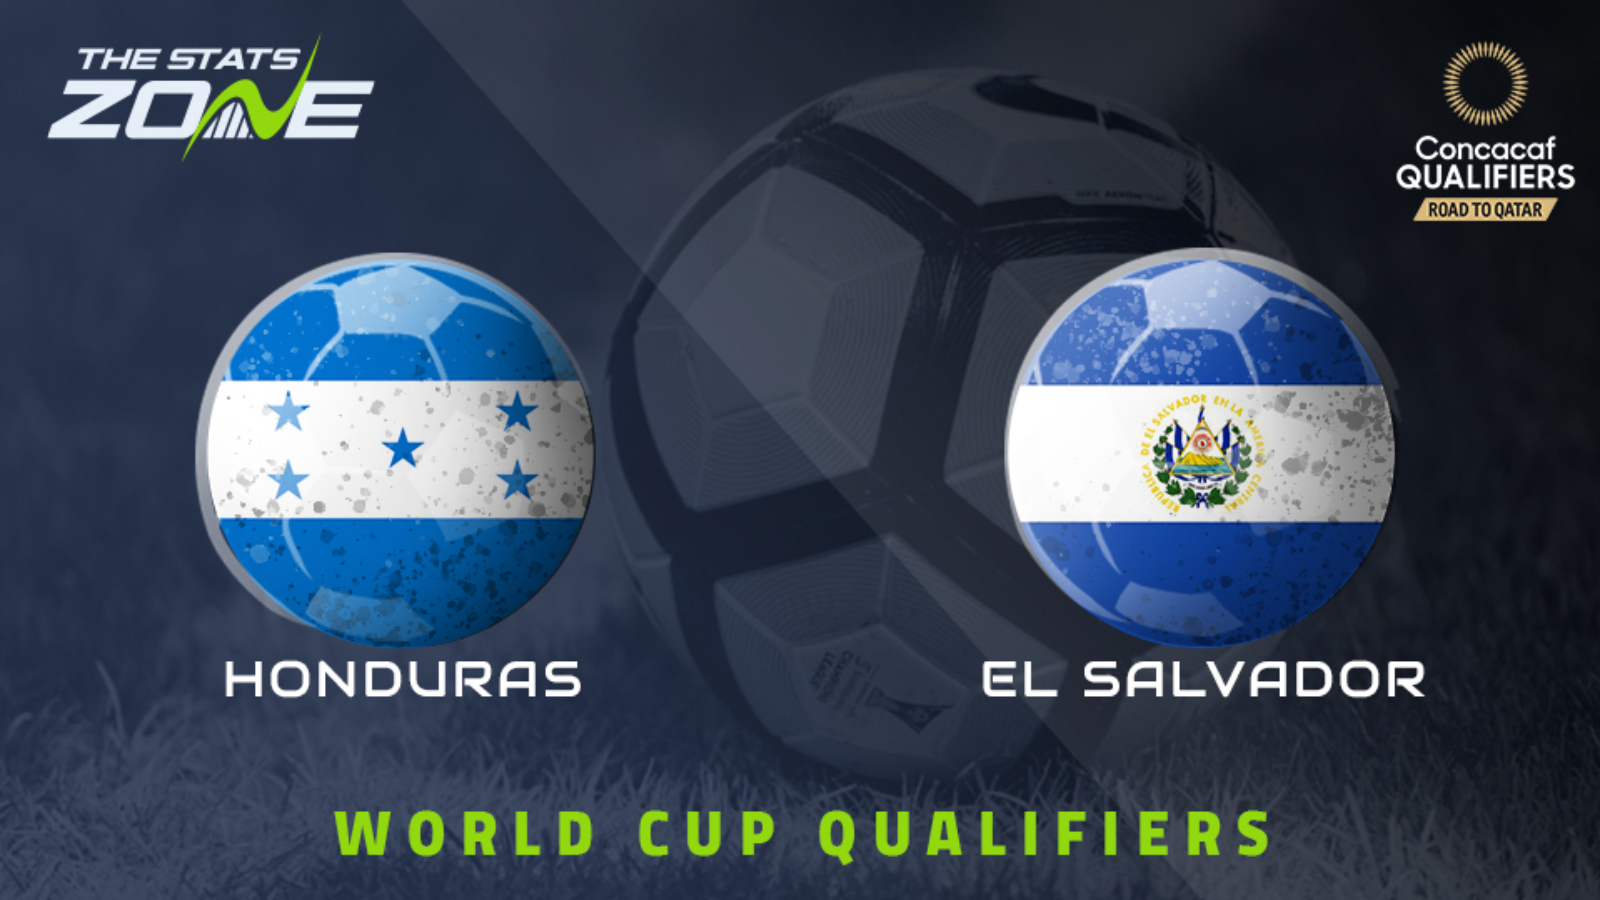 FIFA World Cup 2022 CONCACAF Qualifiers Honduras vs El Salvador